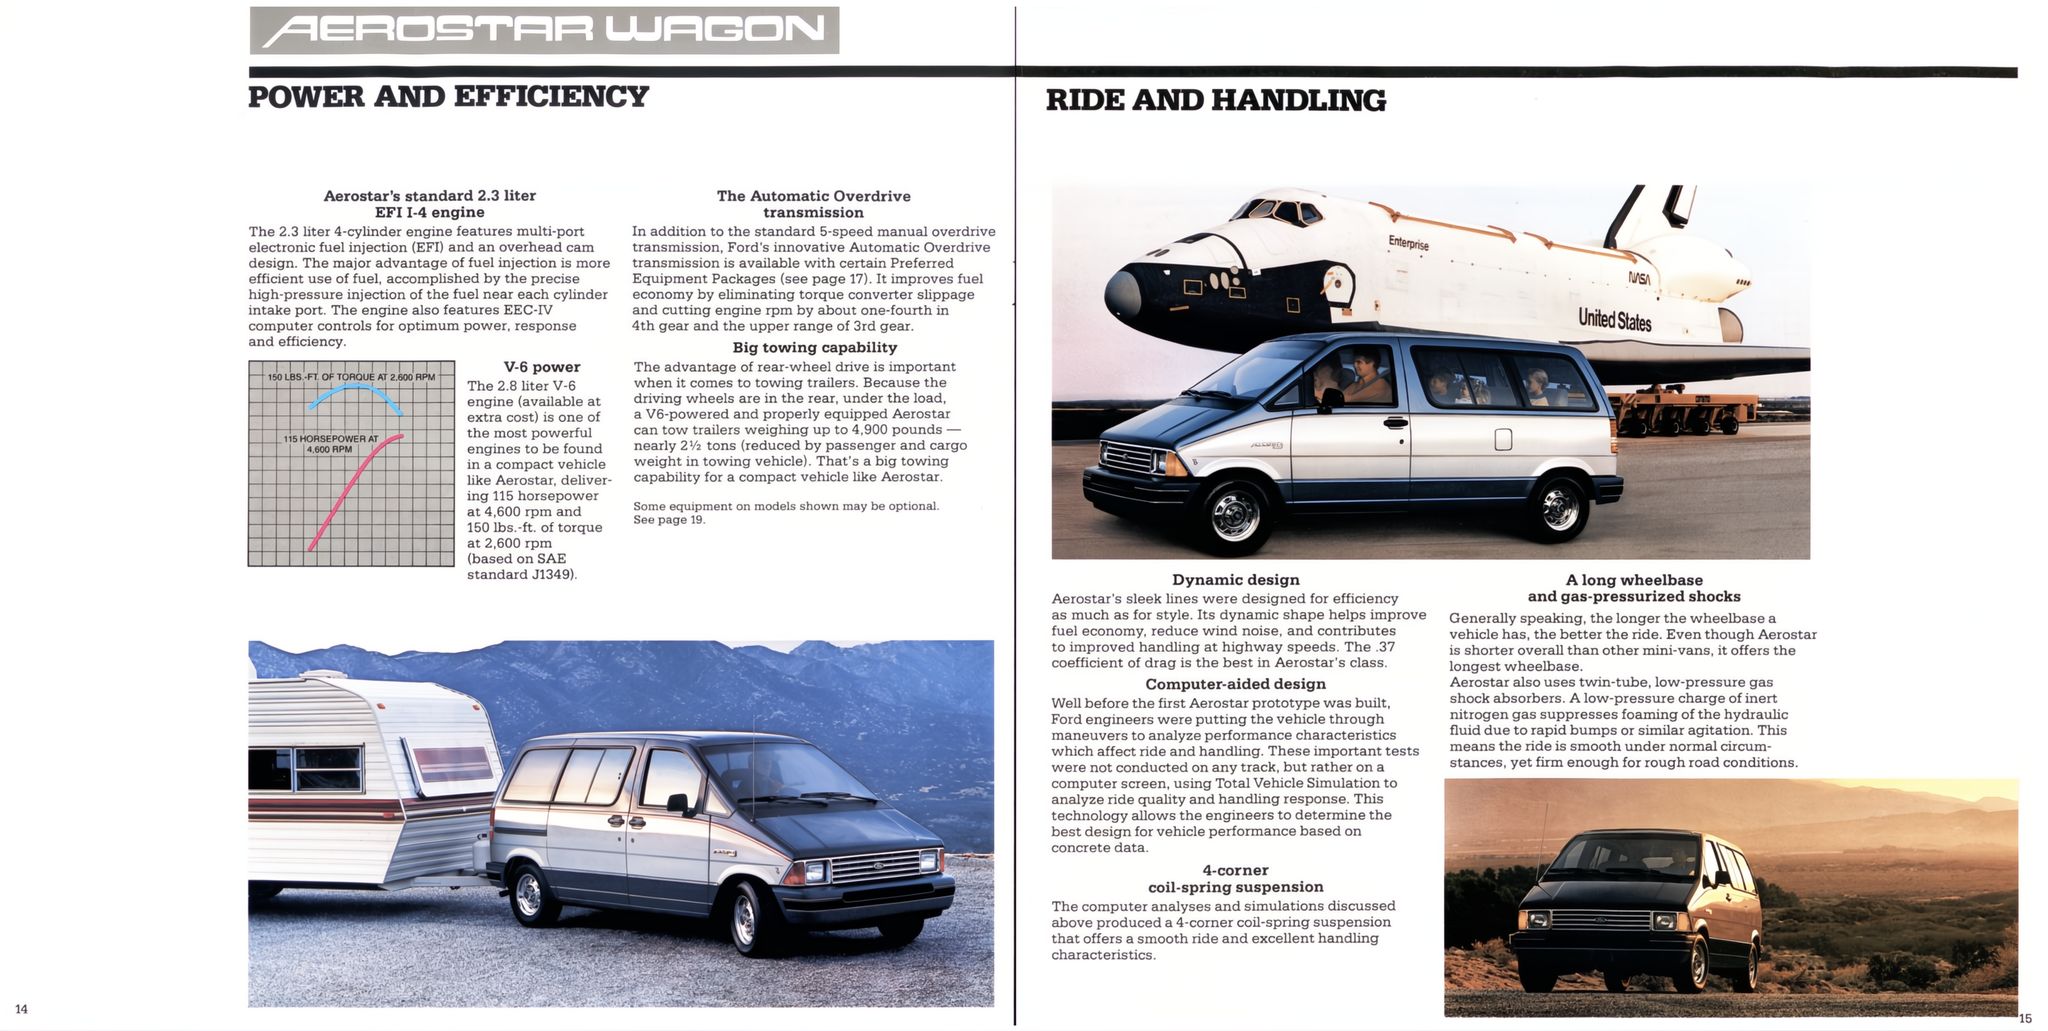 1986 Ford Aerostar Wagon Brochure 14-15